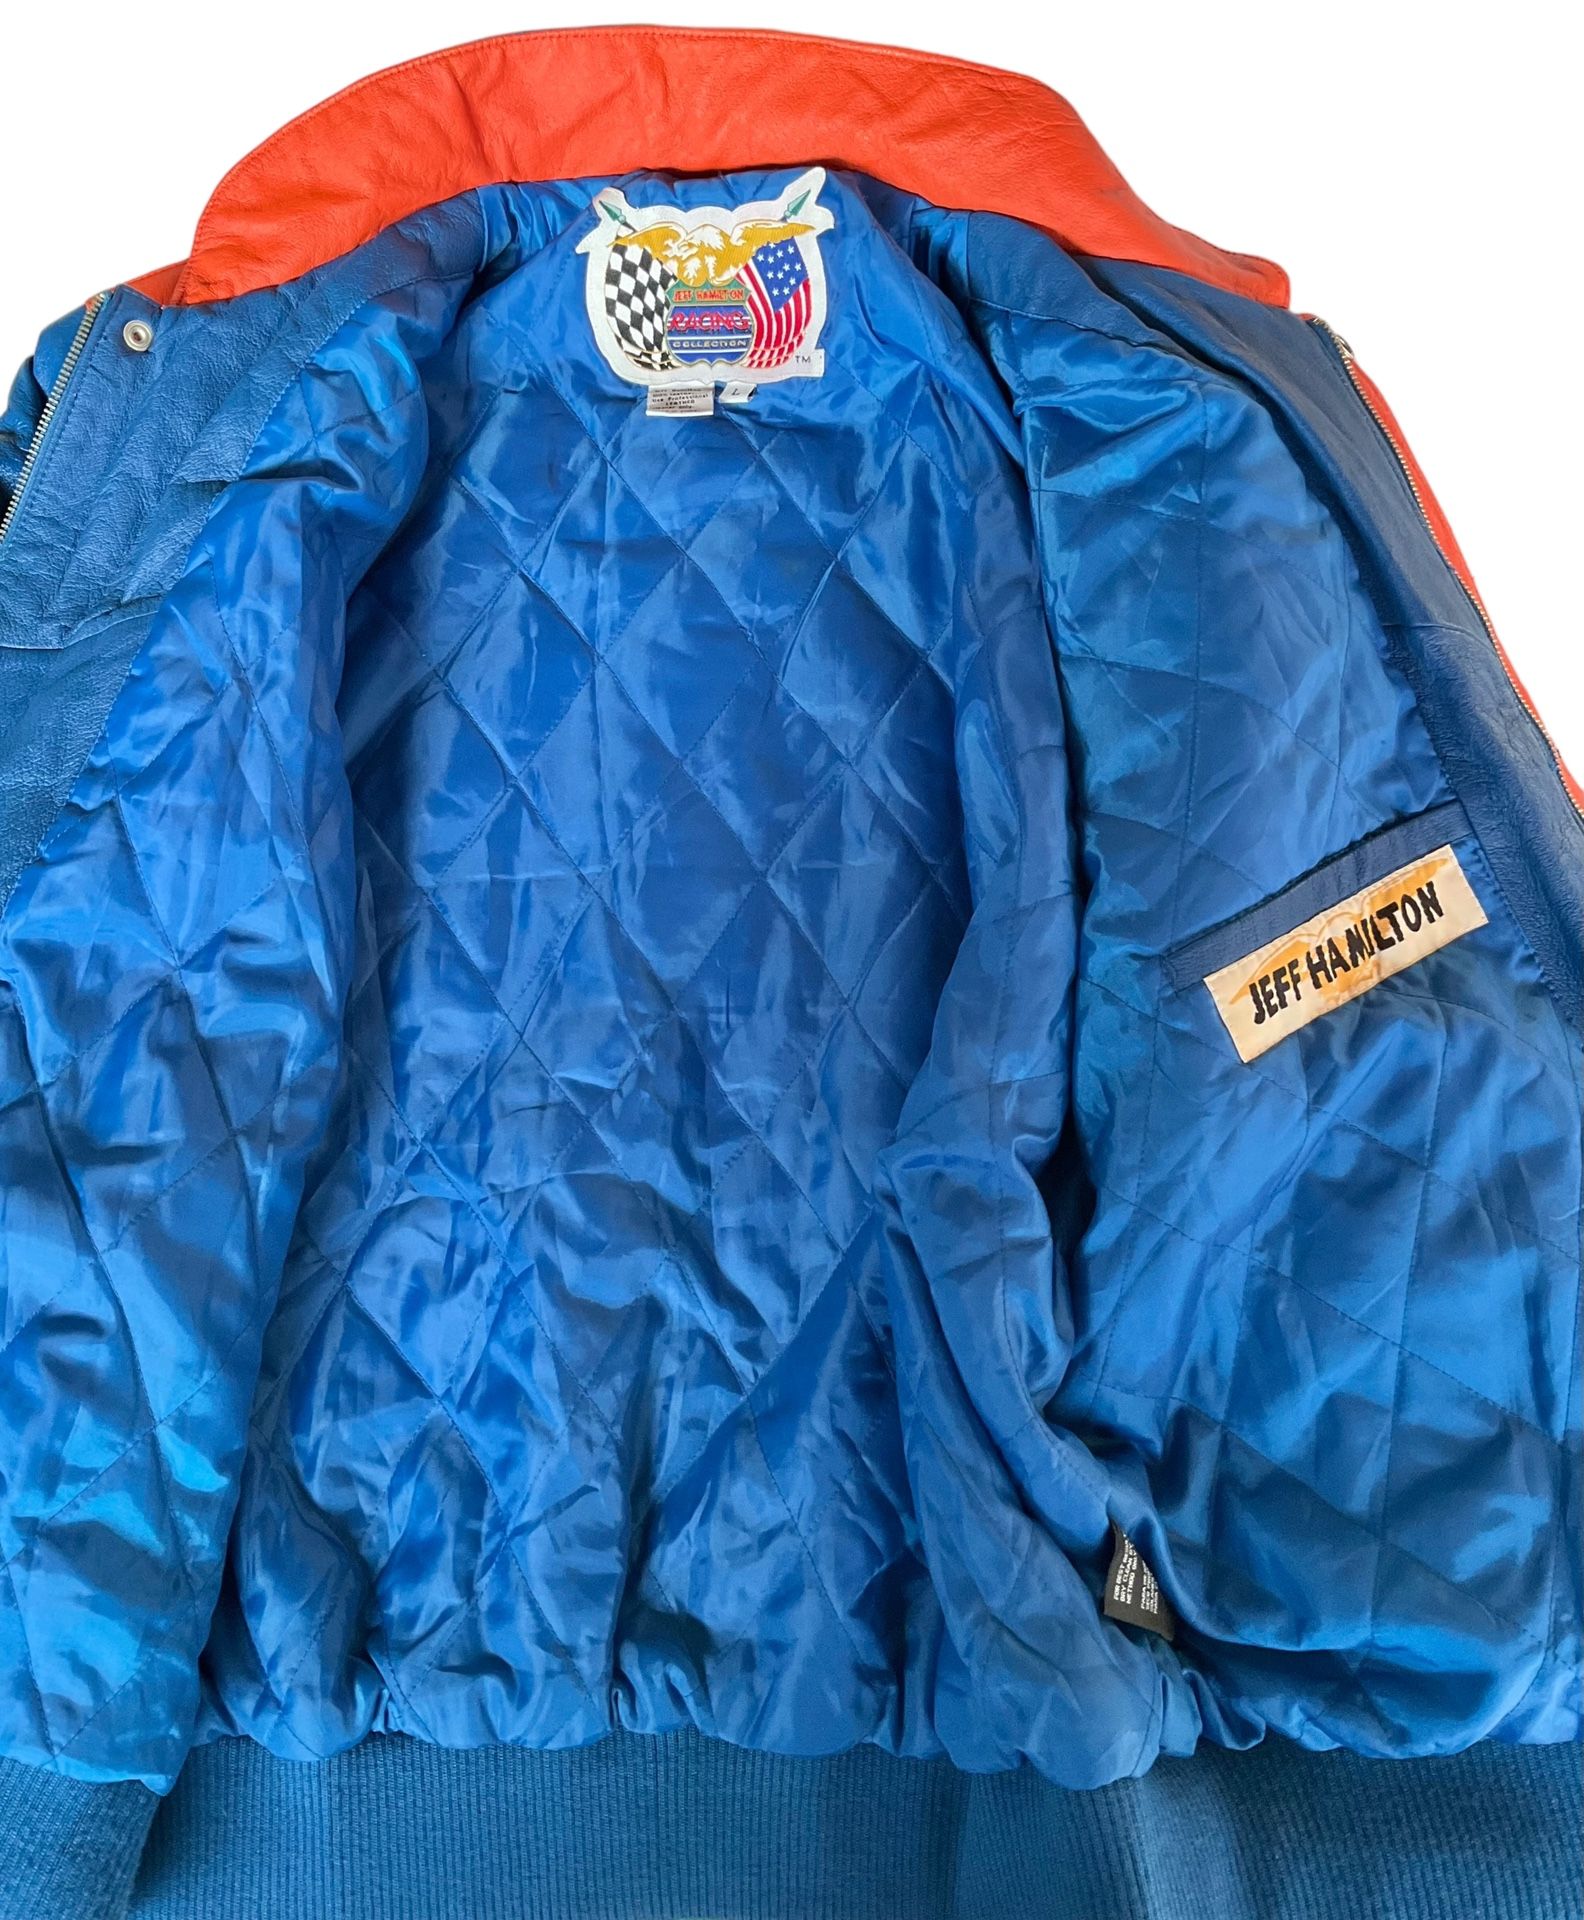 Jeff Hamilton NBA Jacket for Sale in Elizabeth, NJ - OfferUp